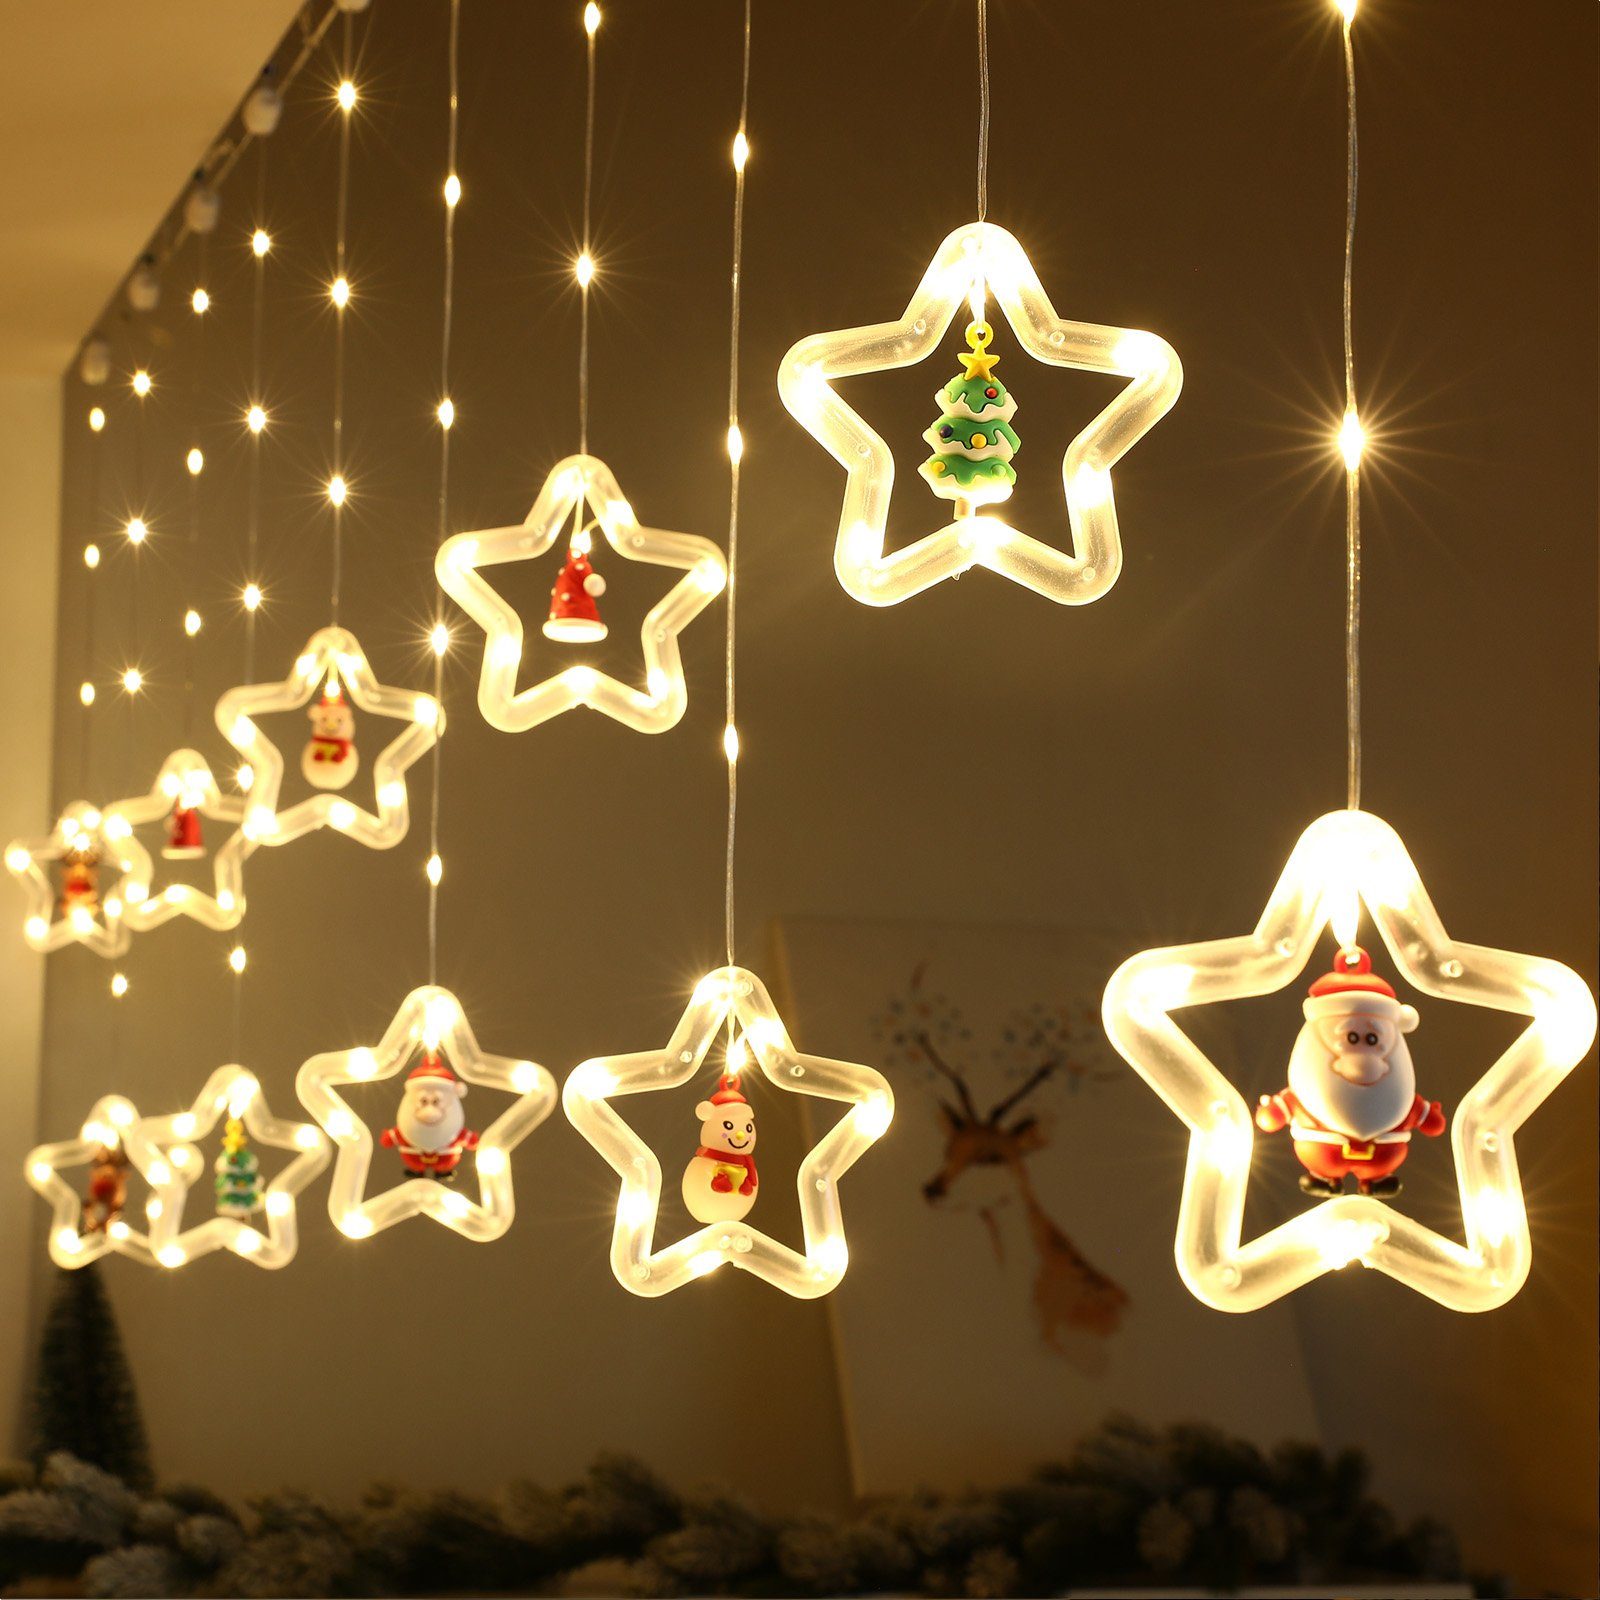 【Mode】 MUPOO Lichterkette LED-Lichterkette 8 Regenlichterkette Fernbedienung Fenster mit LED Innen, Weihnachten Modi Lichtervorhang Fenster Weihnachtsdeko